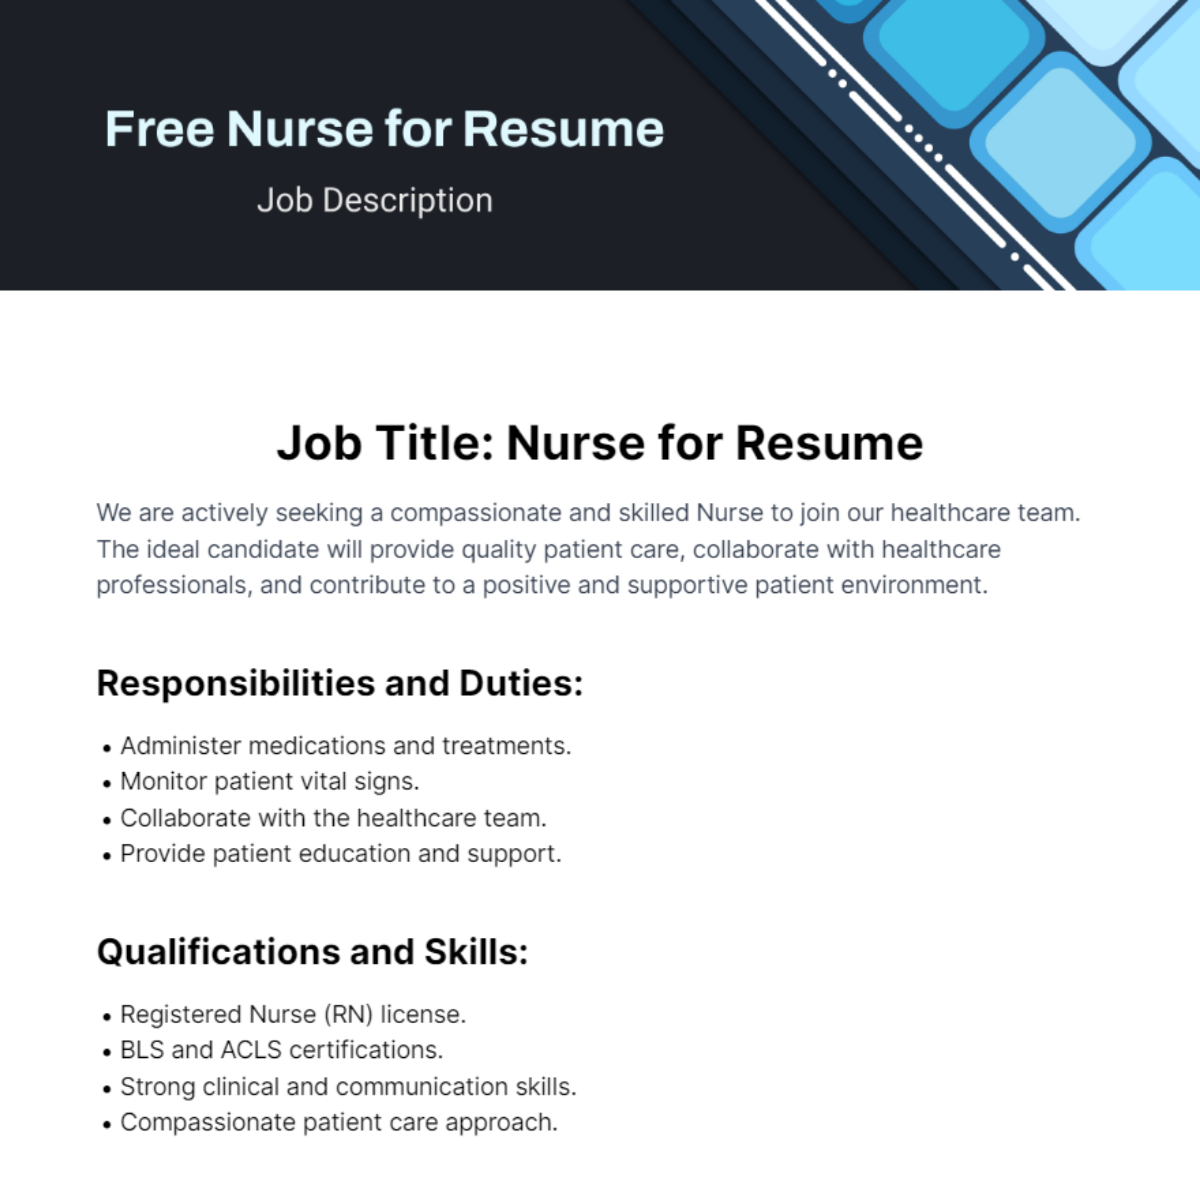 Nurse Job Description for Resume Template